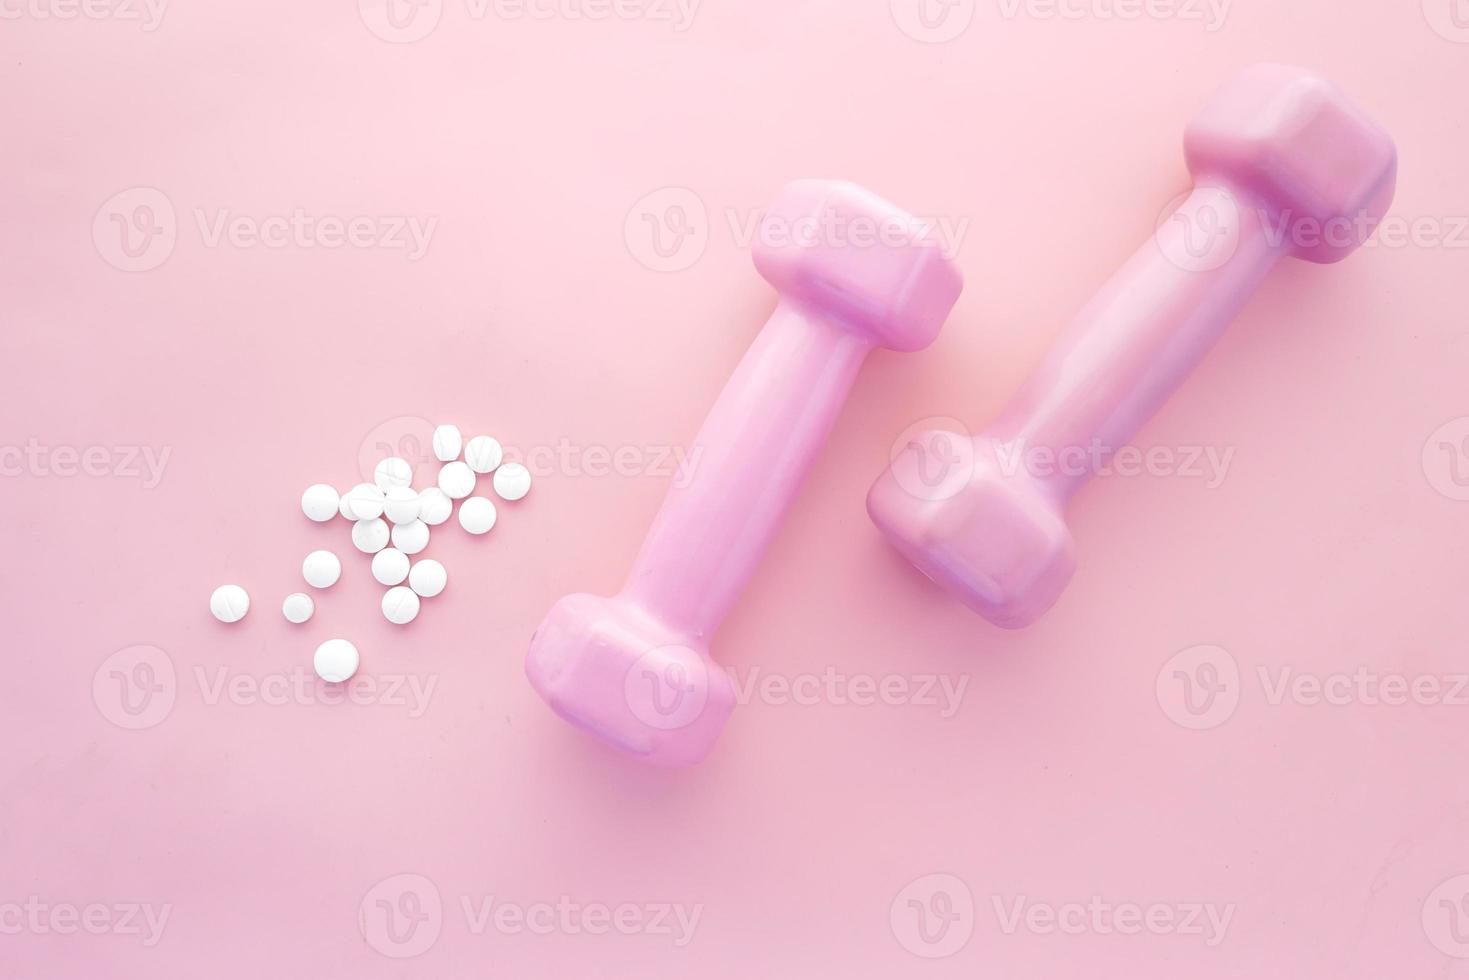 manubrio di colore rosa e pillole mediche su rosa foto